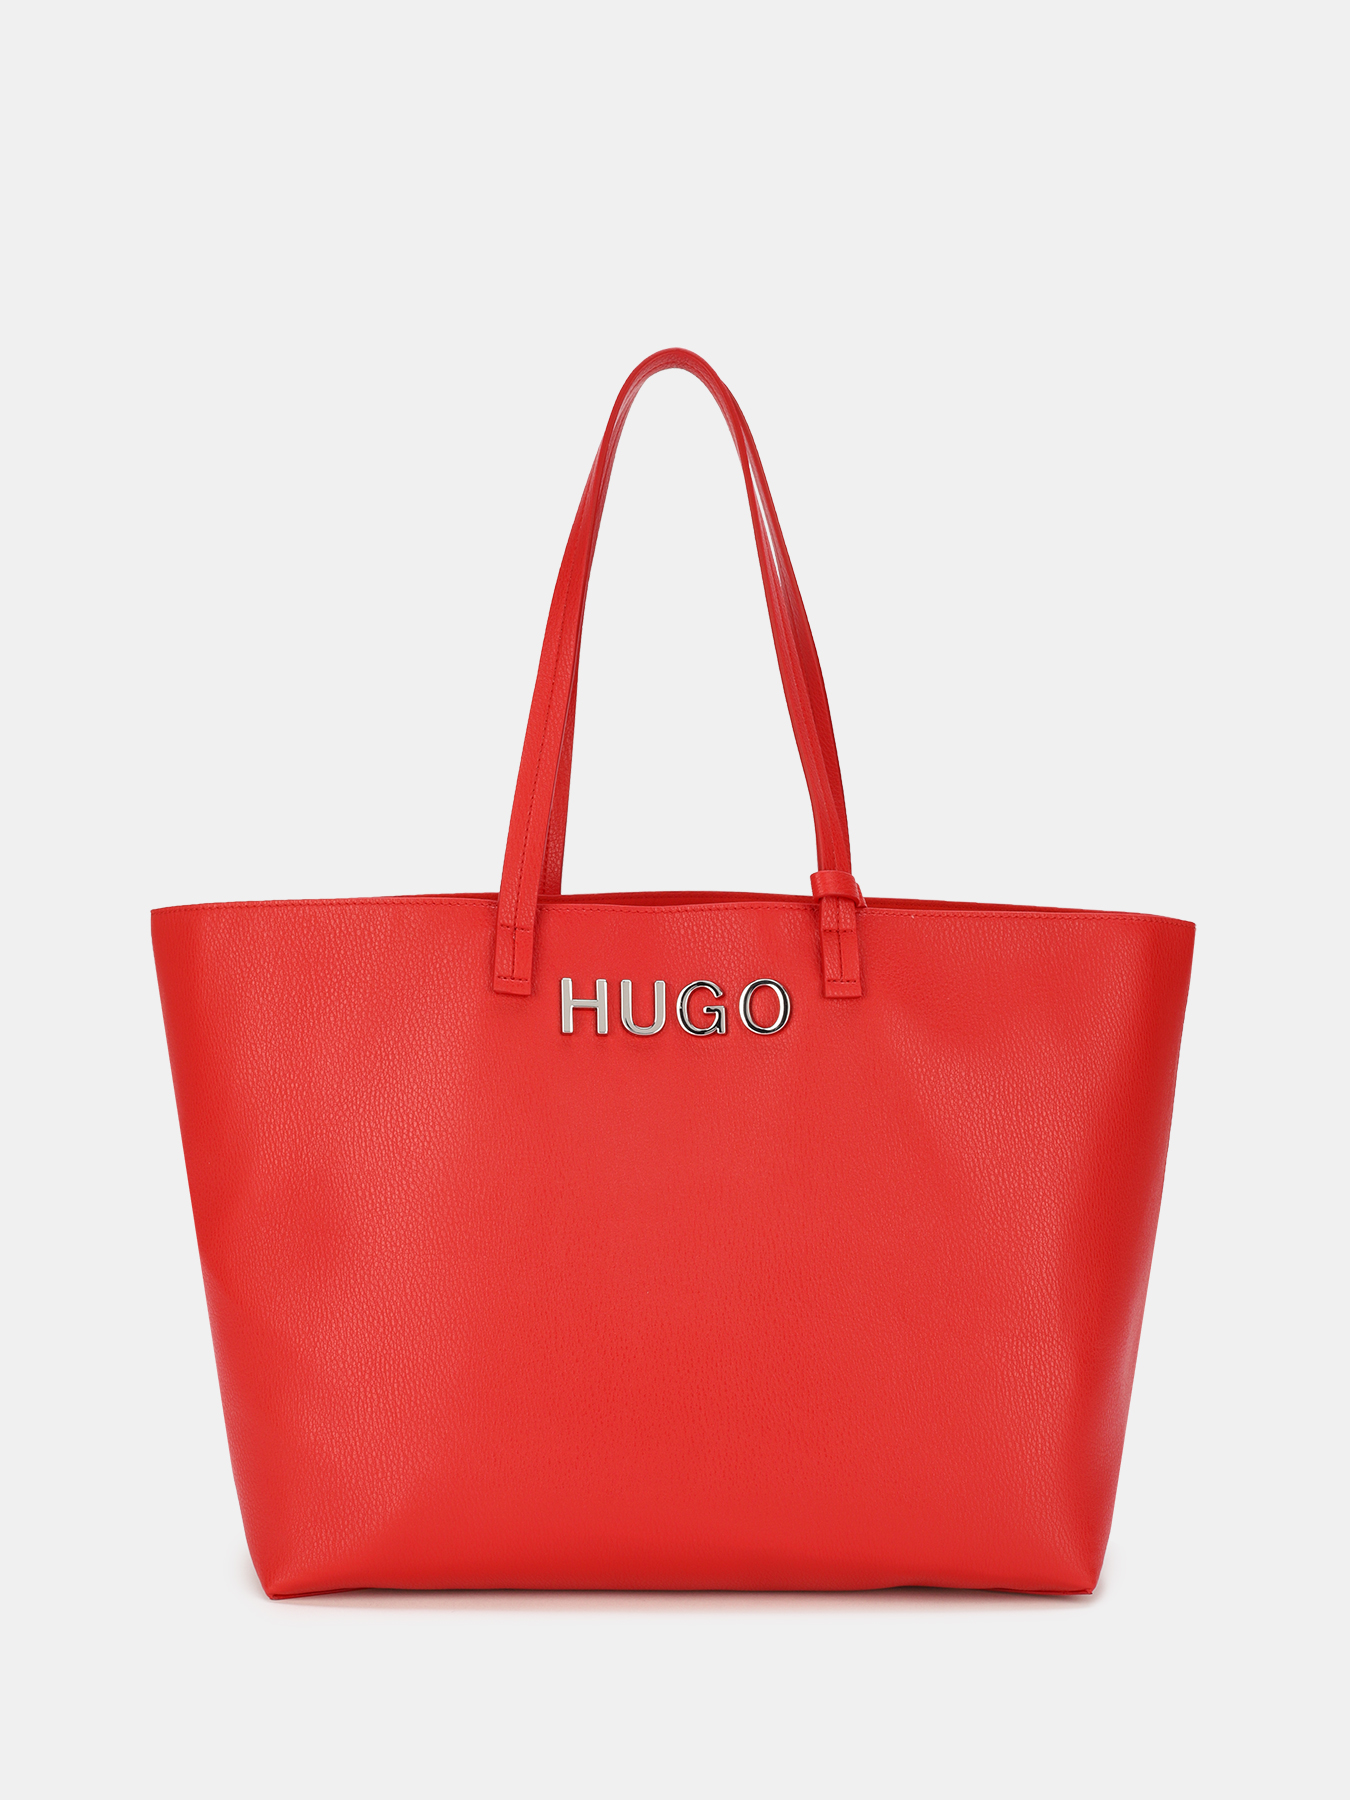 Hugo женские сумки. Сумка Hugo. Hugo сумка красная. Hugo бренд сумки. Hugo сумка женская красная.